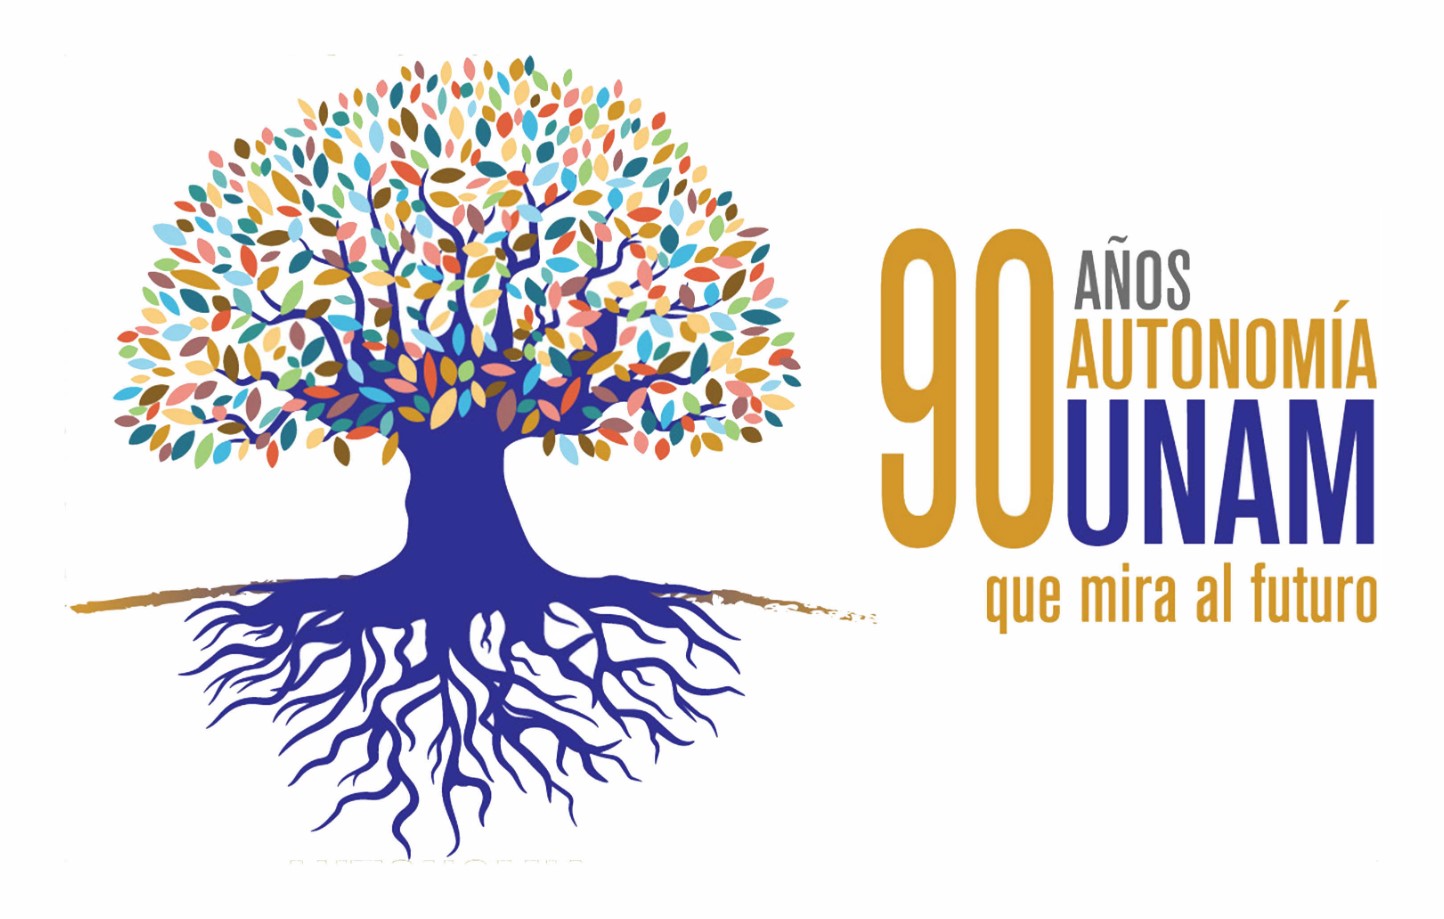 La UNAM cumple 90 años de autonomía